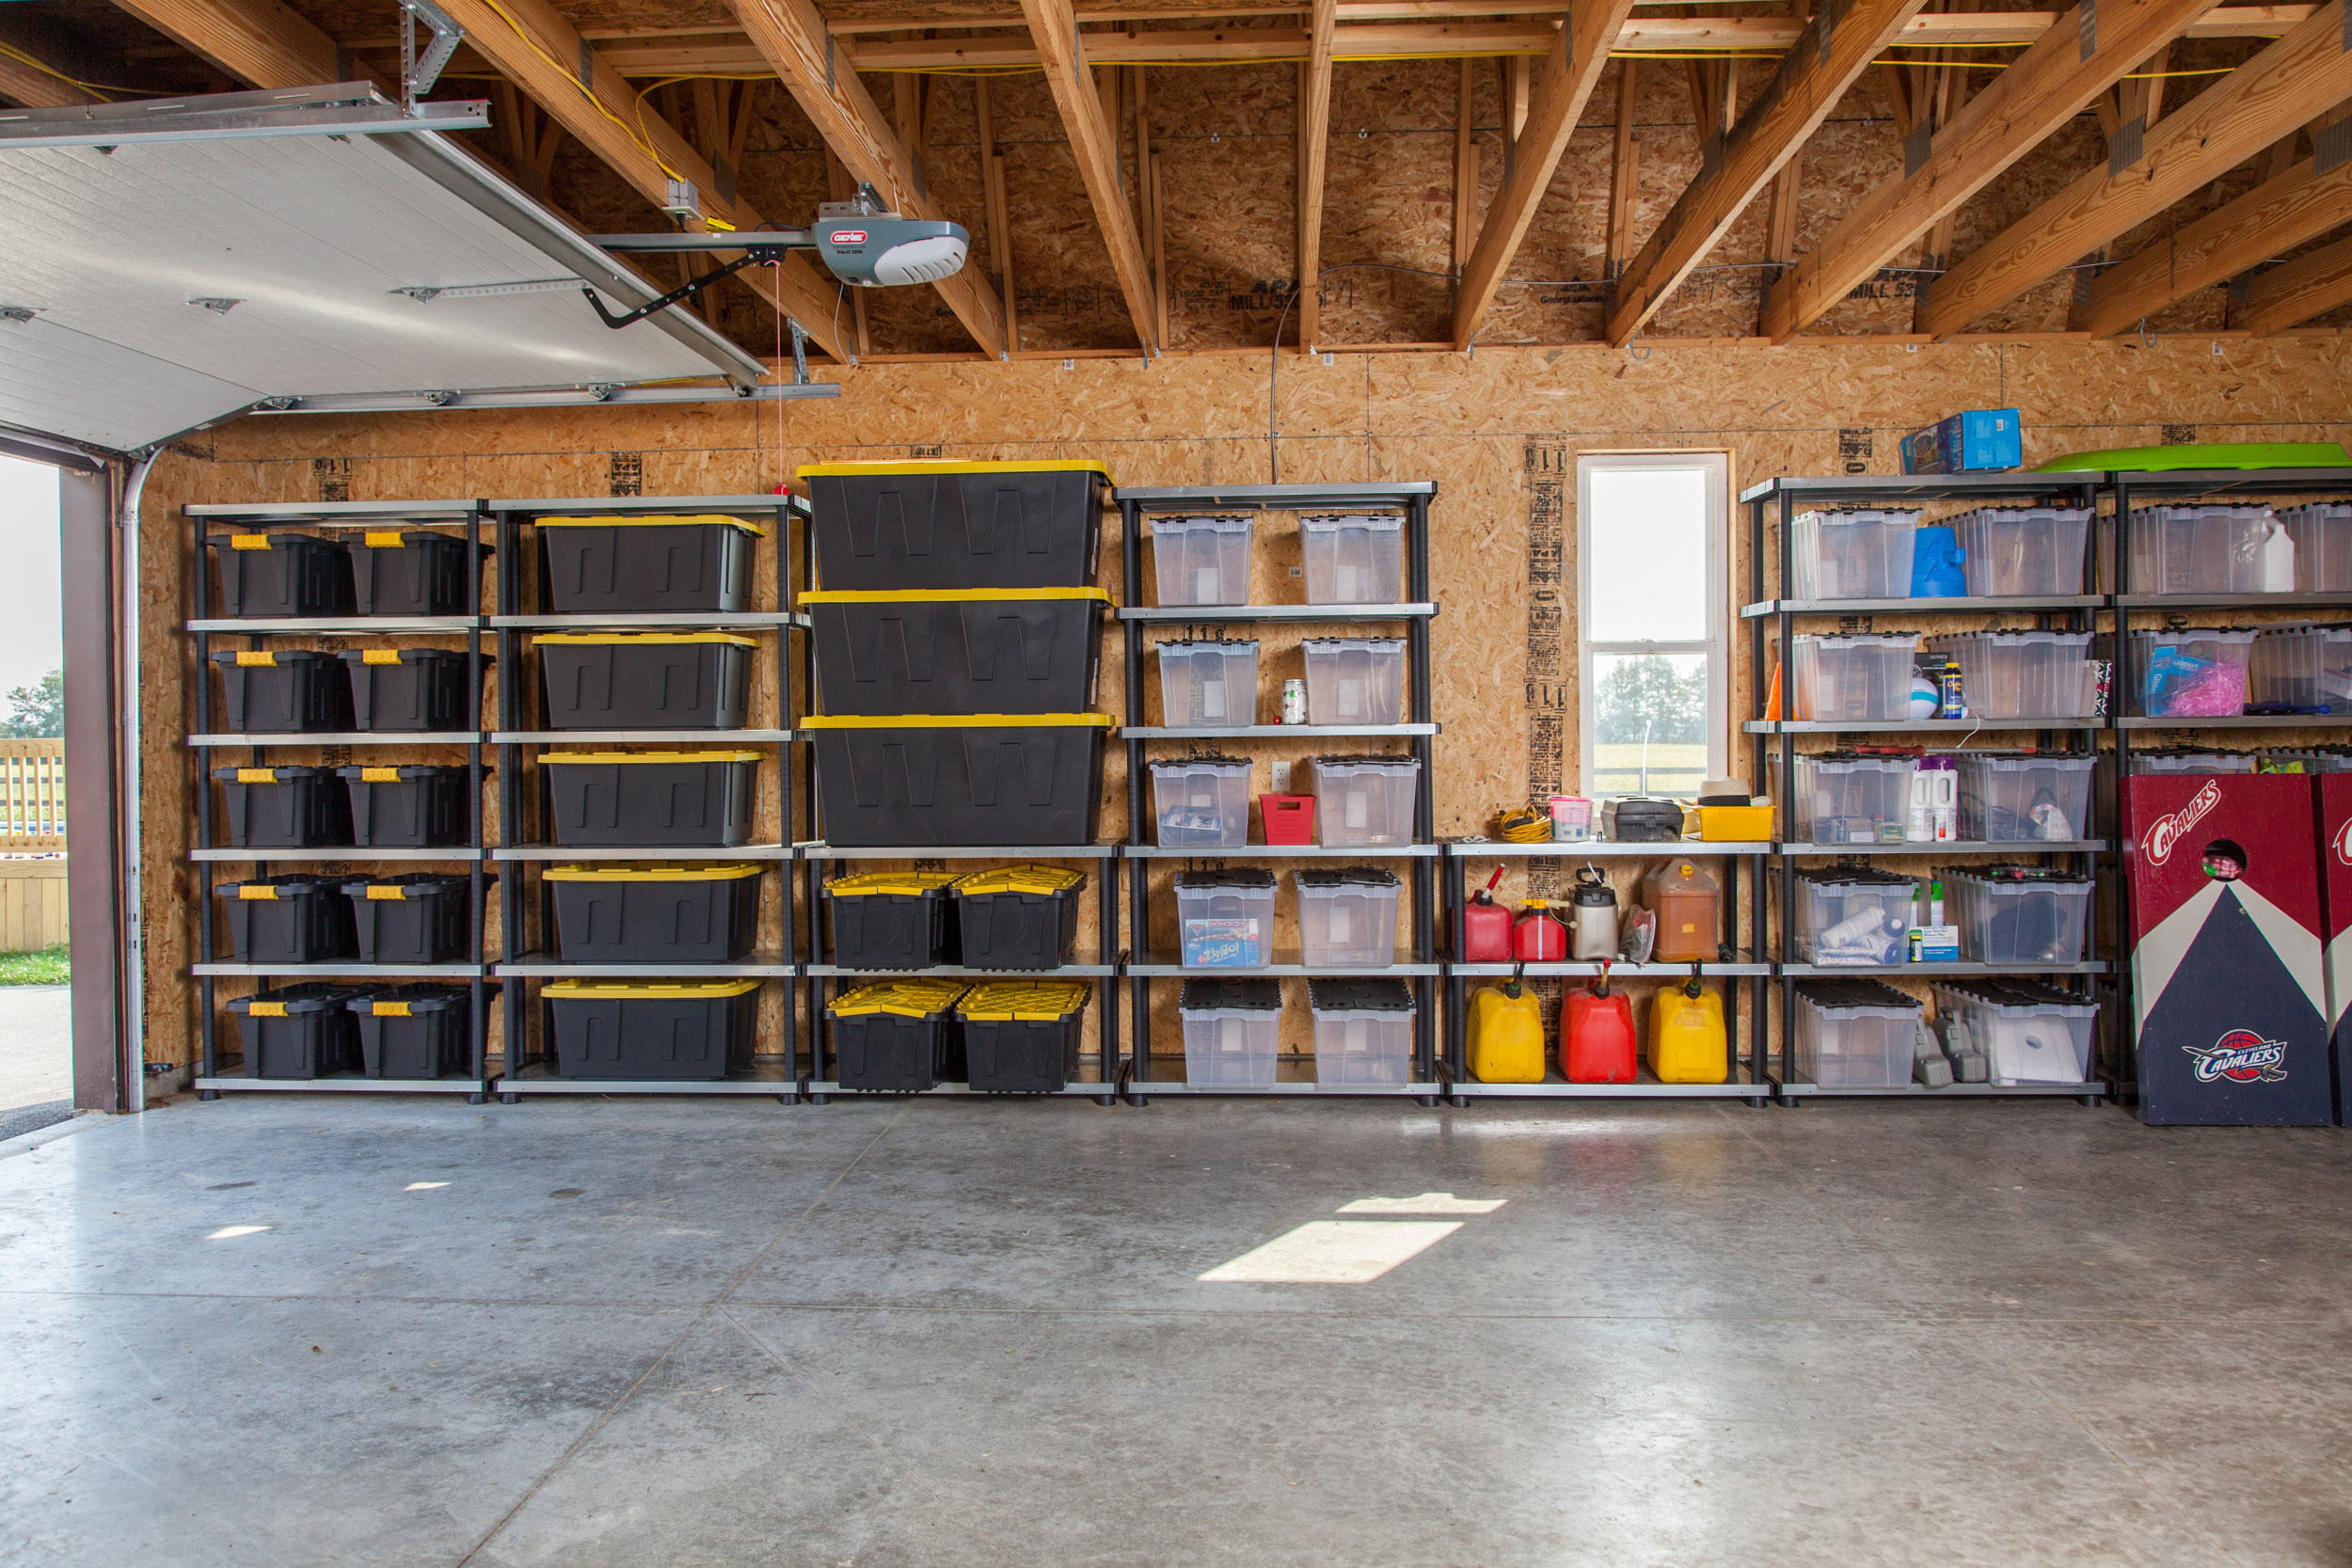 Best ideas about Garage Storage Shelf Ideas
. Save or Pin Best Garage Organization Ideas Now.